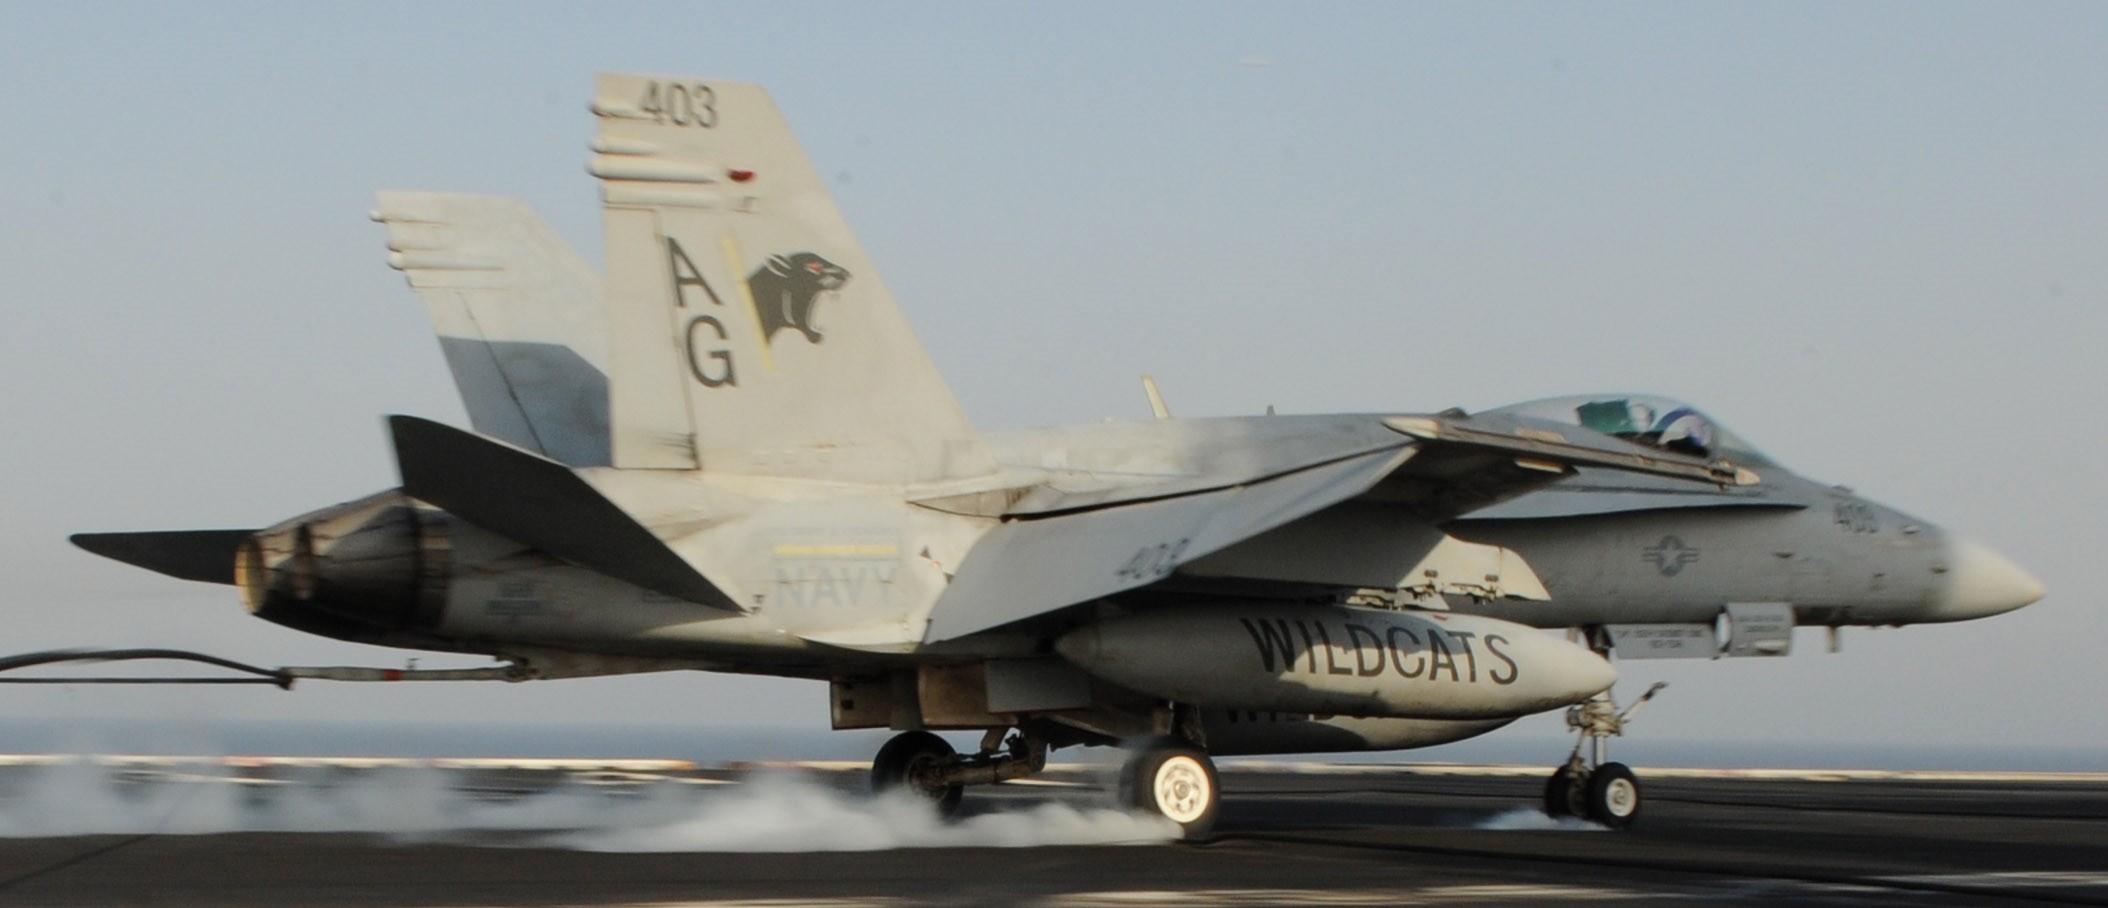 vfa-131 wildcats strike fighter squadron f/a-18c hornet cvw-7 uss dwight d. eisenhower cvn-69 2012 68